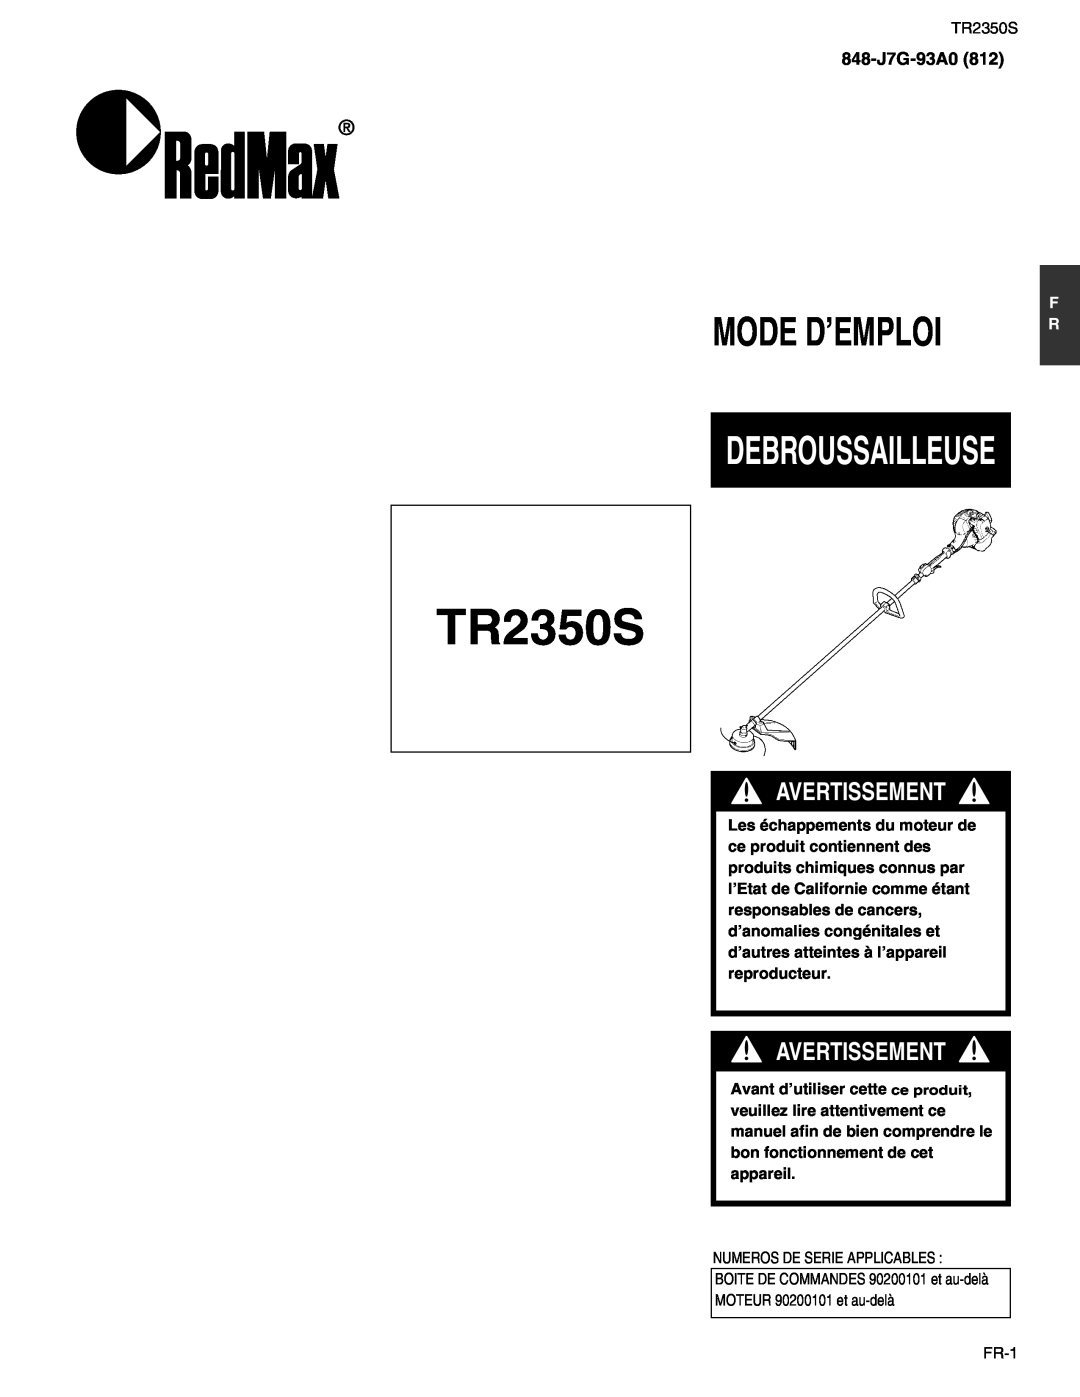 RedMax TR2350S manual Mode D’Emploi, Debroussailleuse, Avertissement, 848-J7G-93A0812 